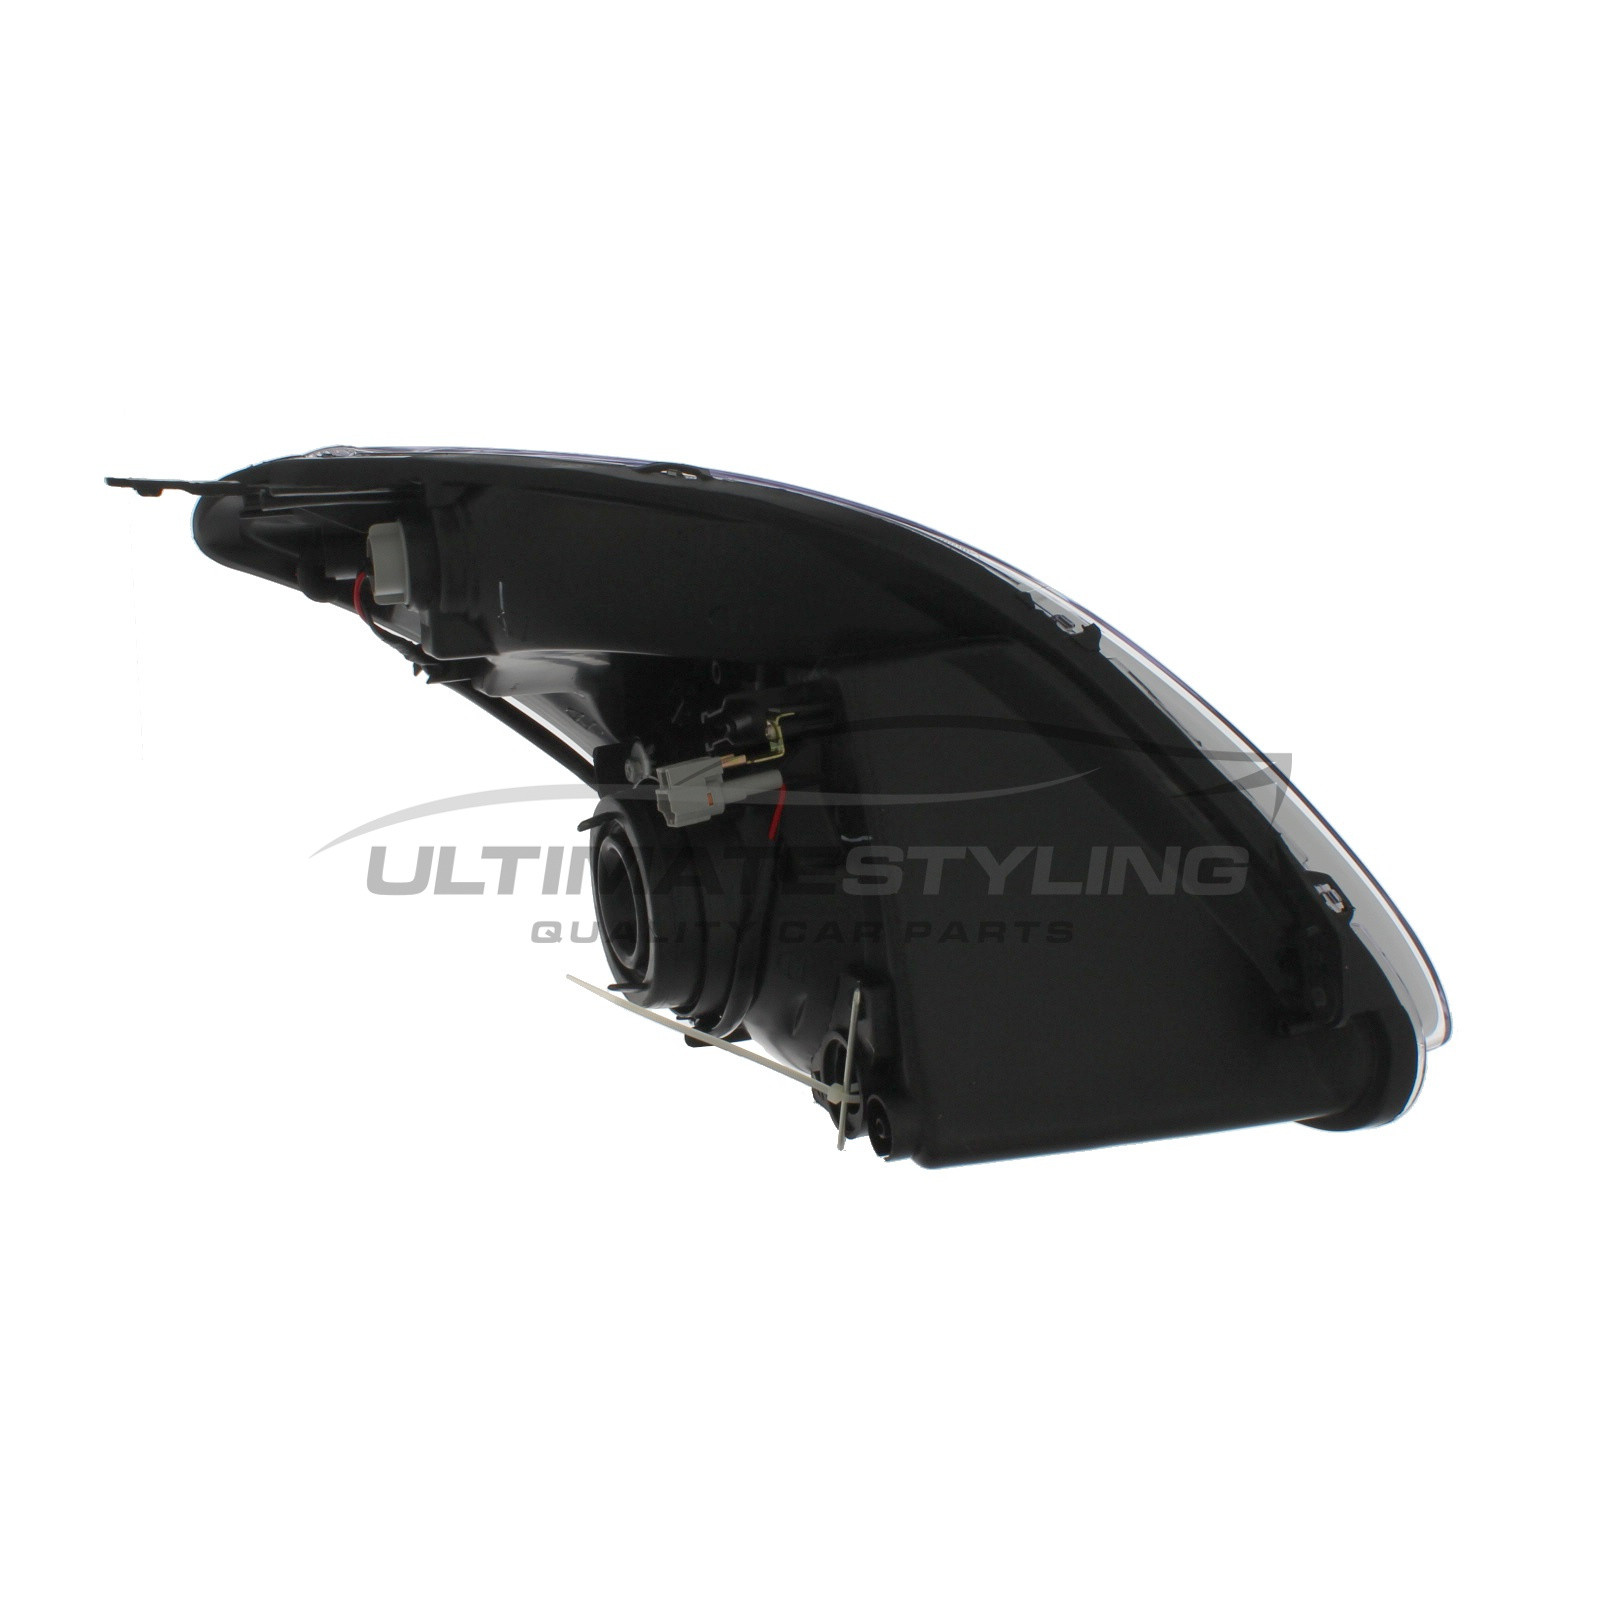 Suzuki Swift Headlight / Headlamp - Passenger Side (LH) - Halogen